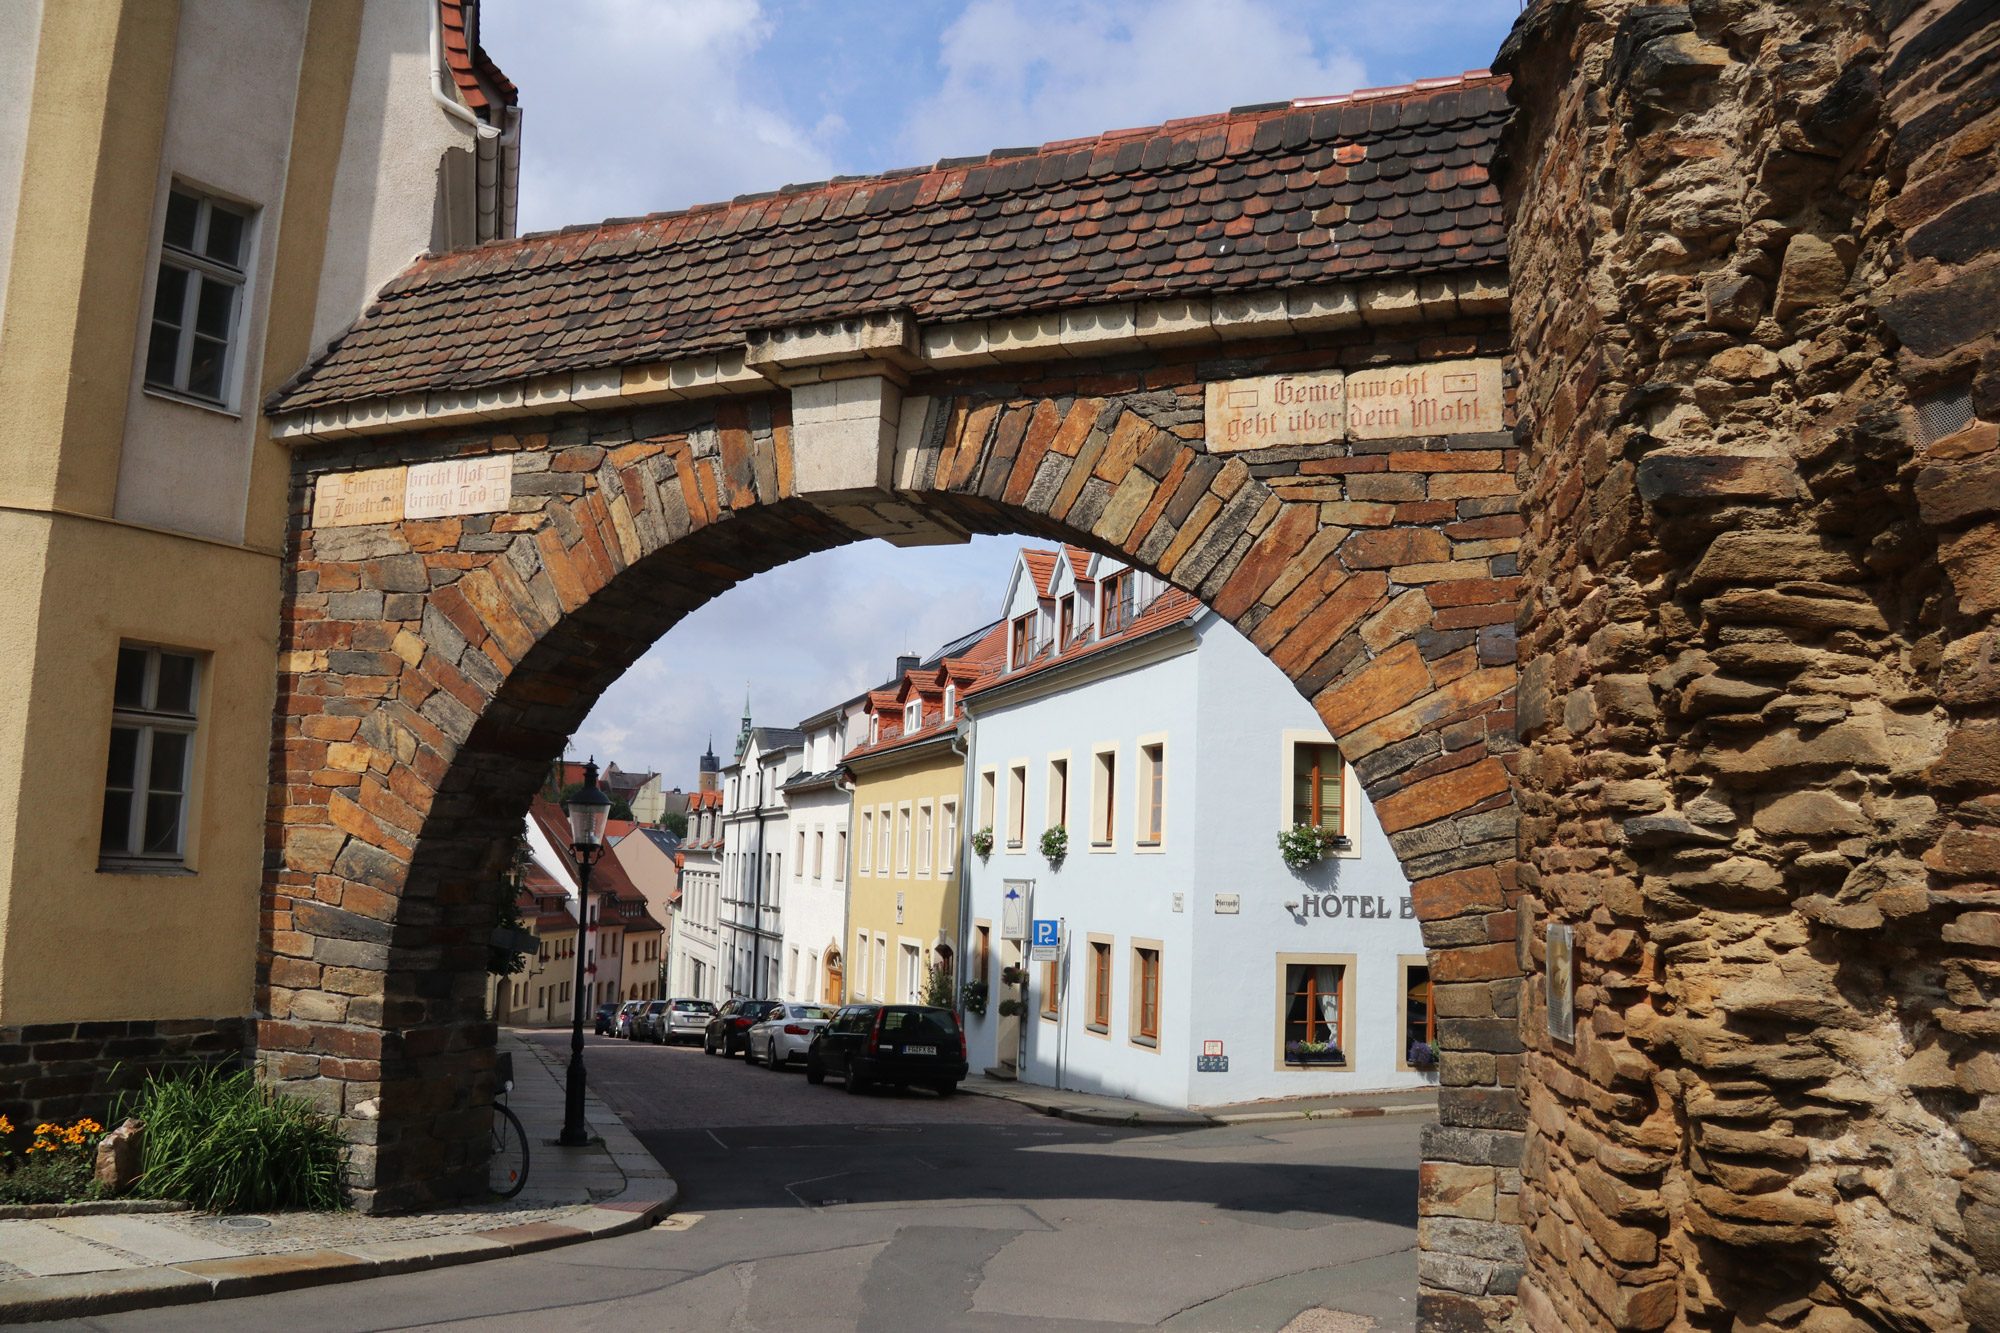 Freiberg ontdekken met oma - De oude stadsmuur van Freiberg